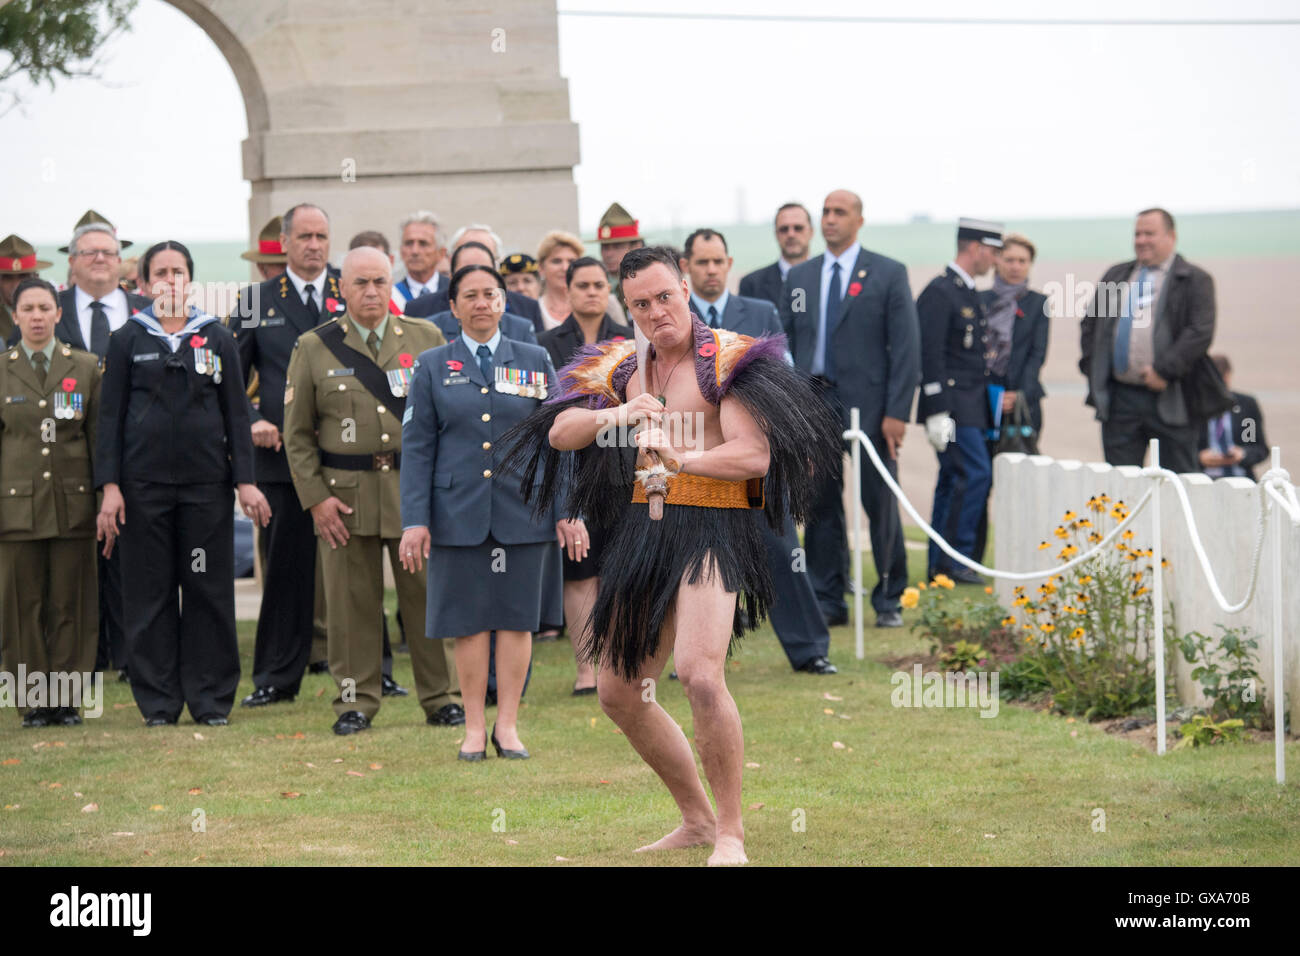 Un membro della cultura Maori il gruppo svolge in Nuova Zelanda Somme commemorazioni presso la valle di Caterpillar Commonwealth War Graves Commissione cimitero in Longueval, in Francia, in occasione del centenario della prima guerra mondiale il conflitto. Foto Stock